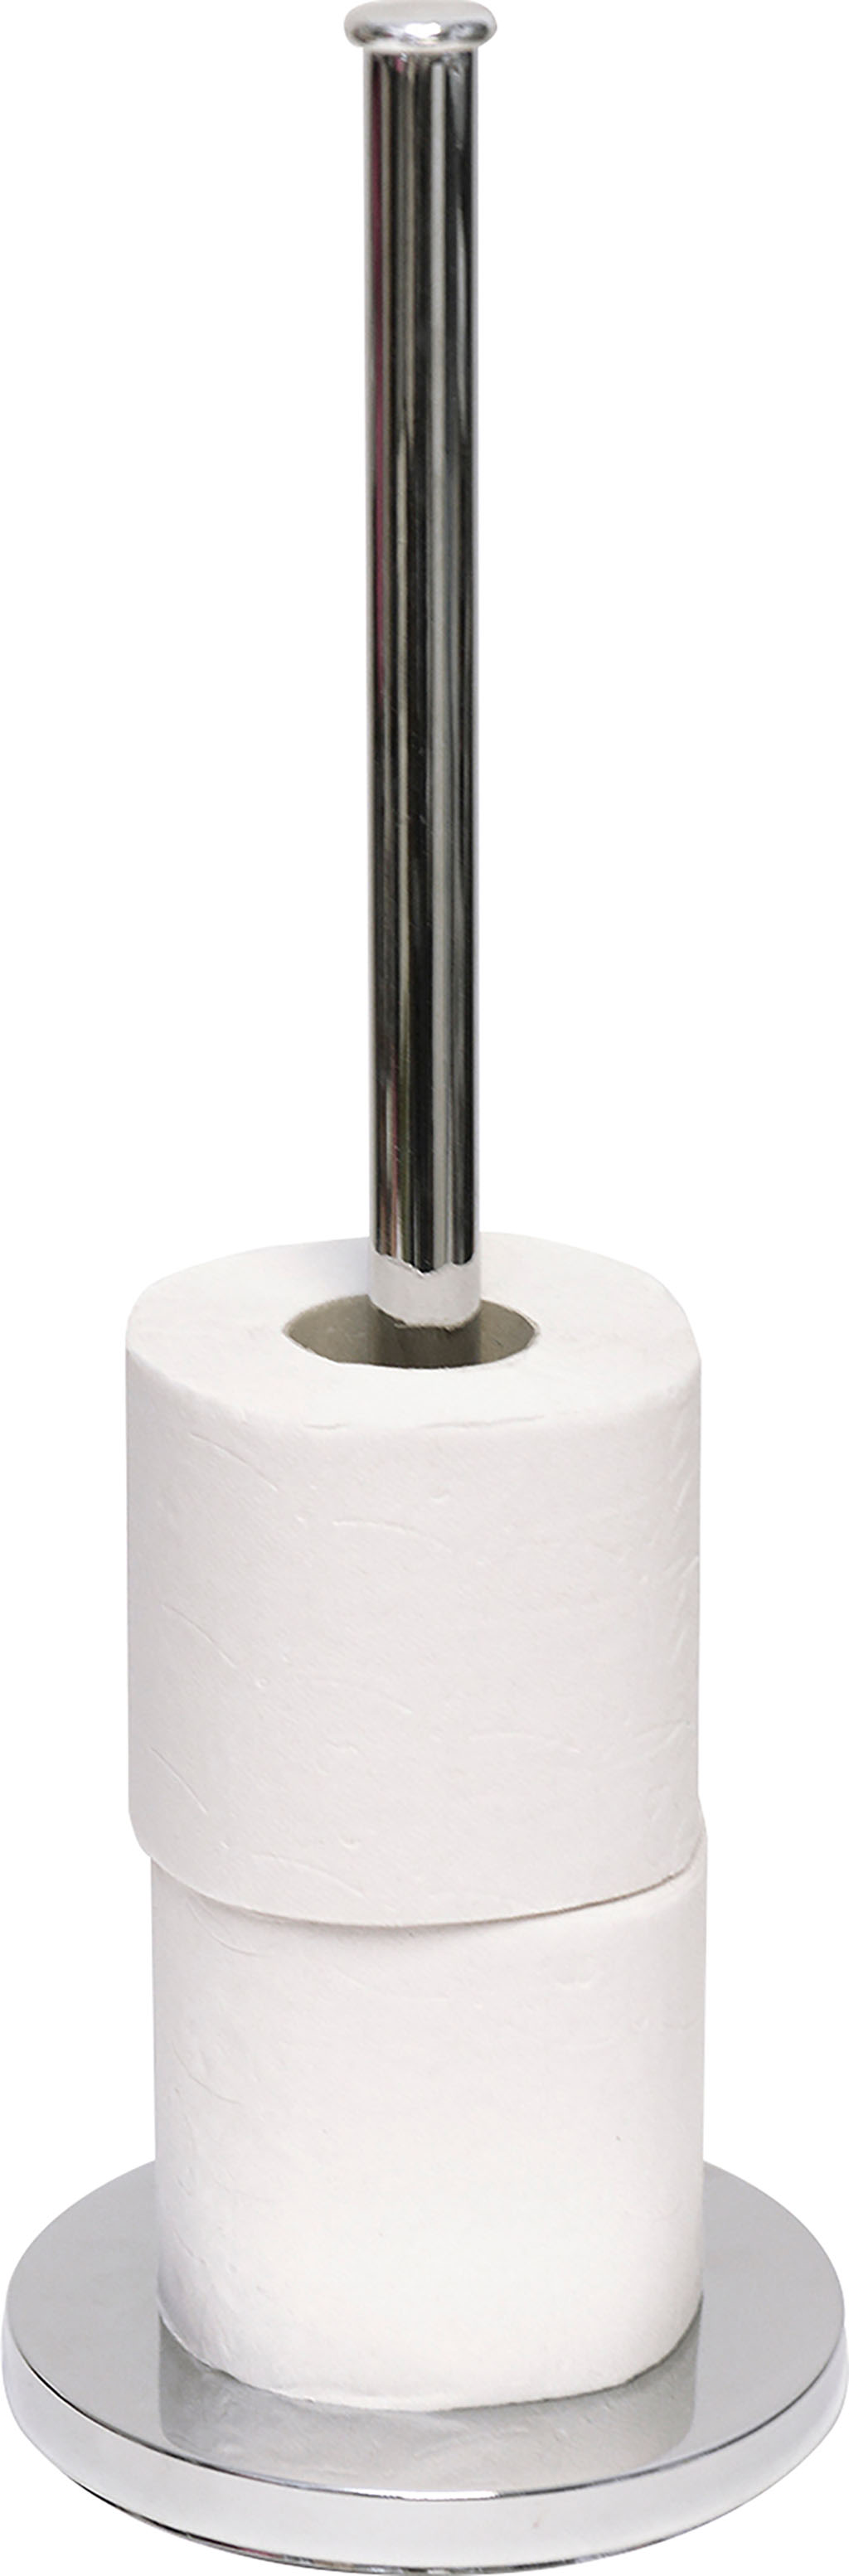 Réserve de papier toilette en inox - ON RANGE TOUT